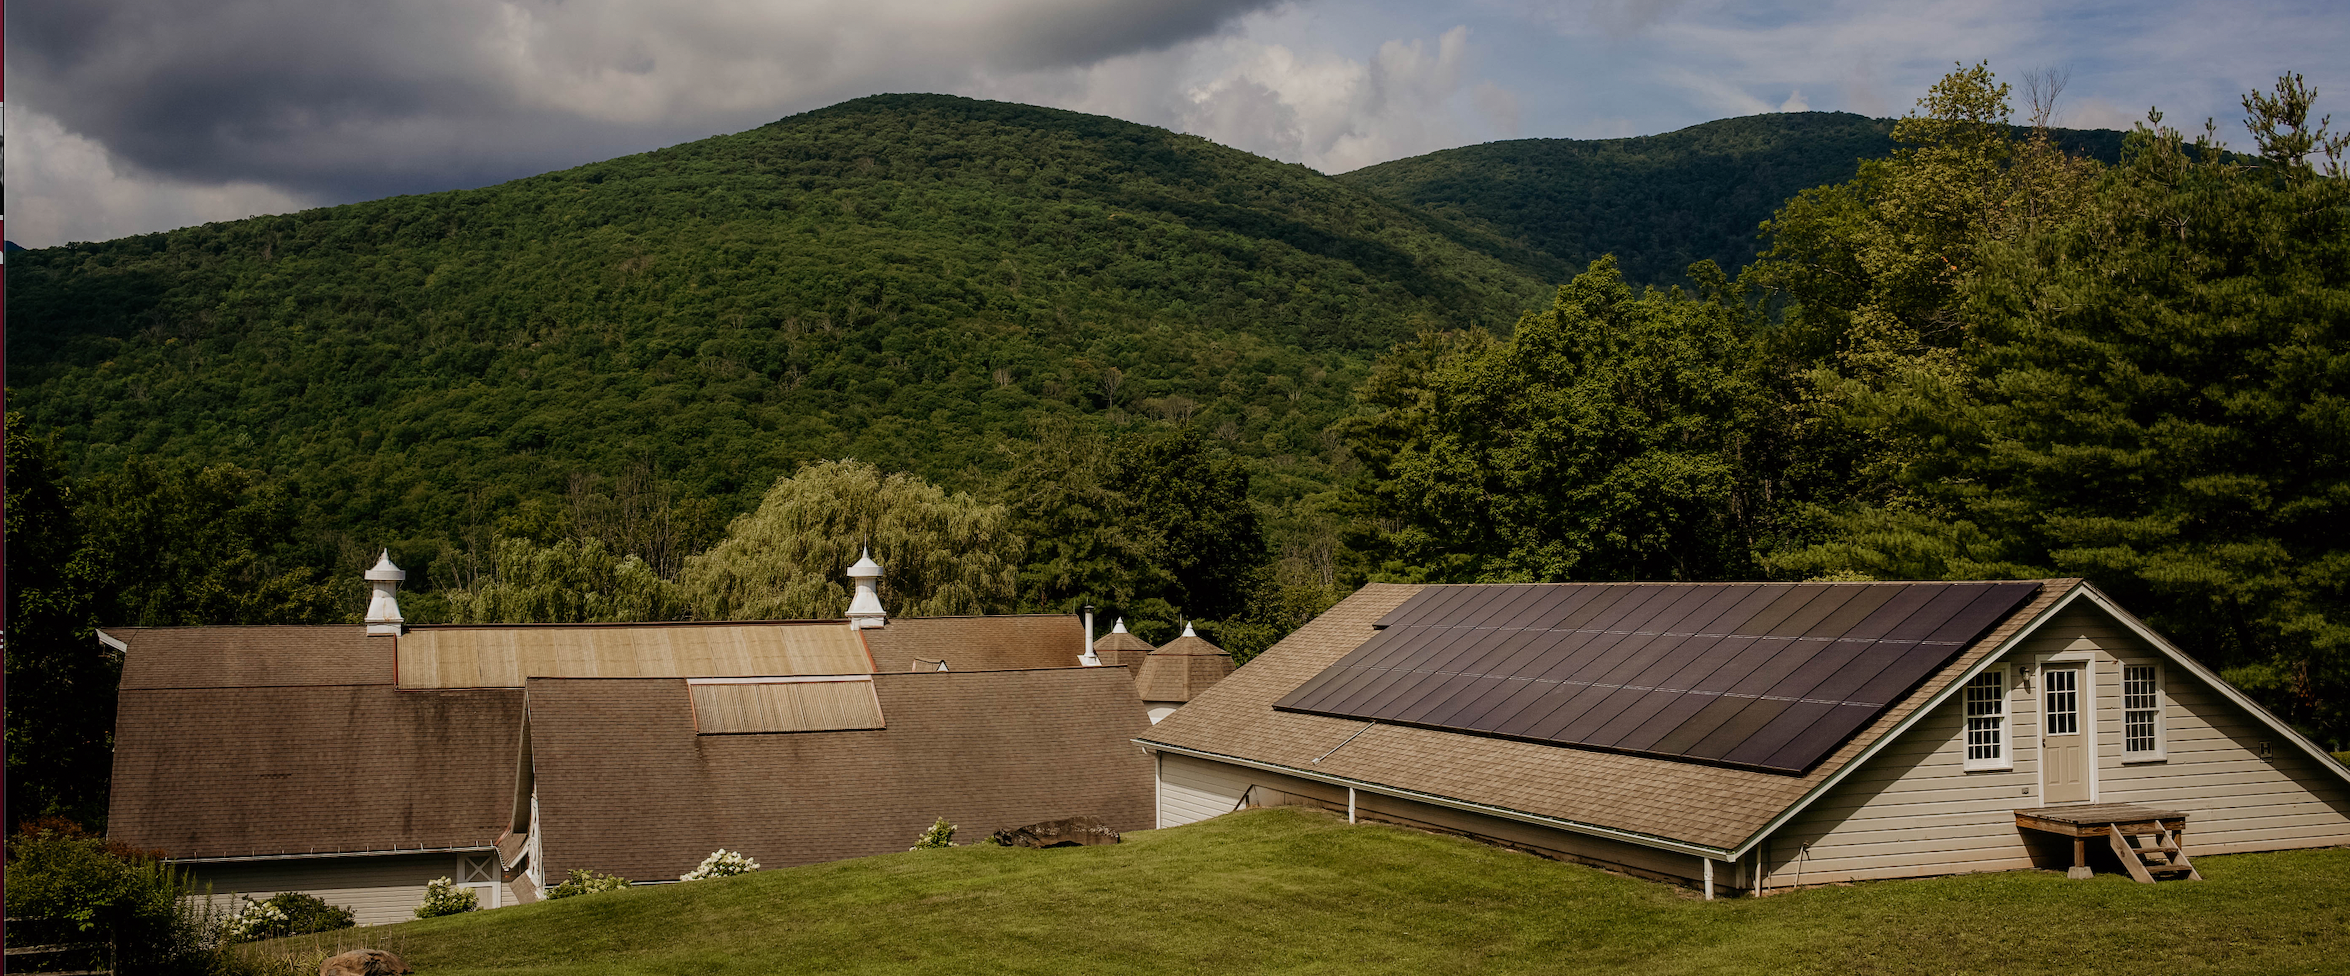 solar-installation-company-catskill-mountains-phoenicia-shandaken-shokan